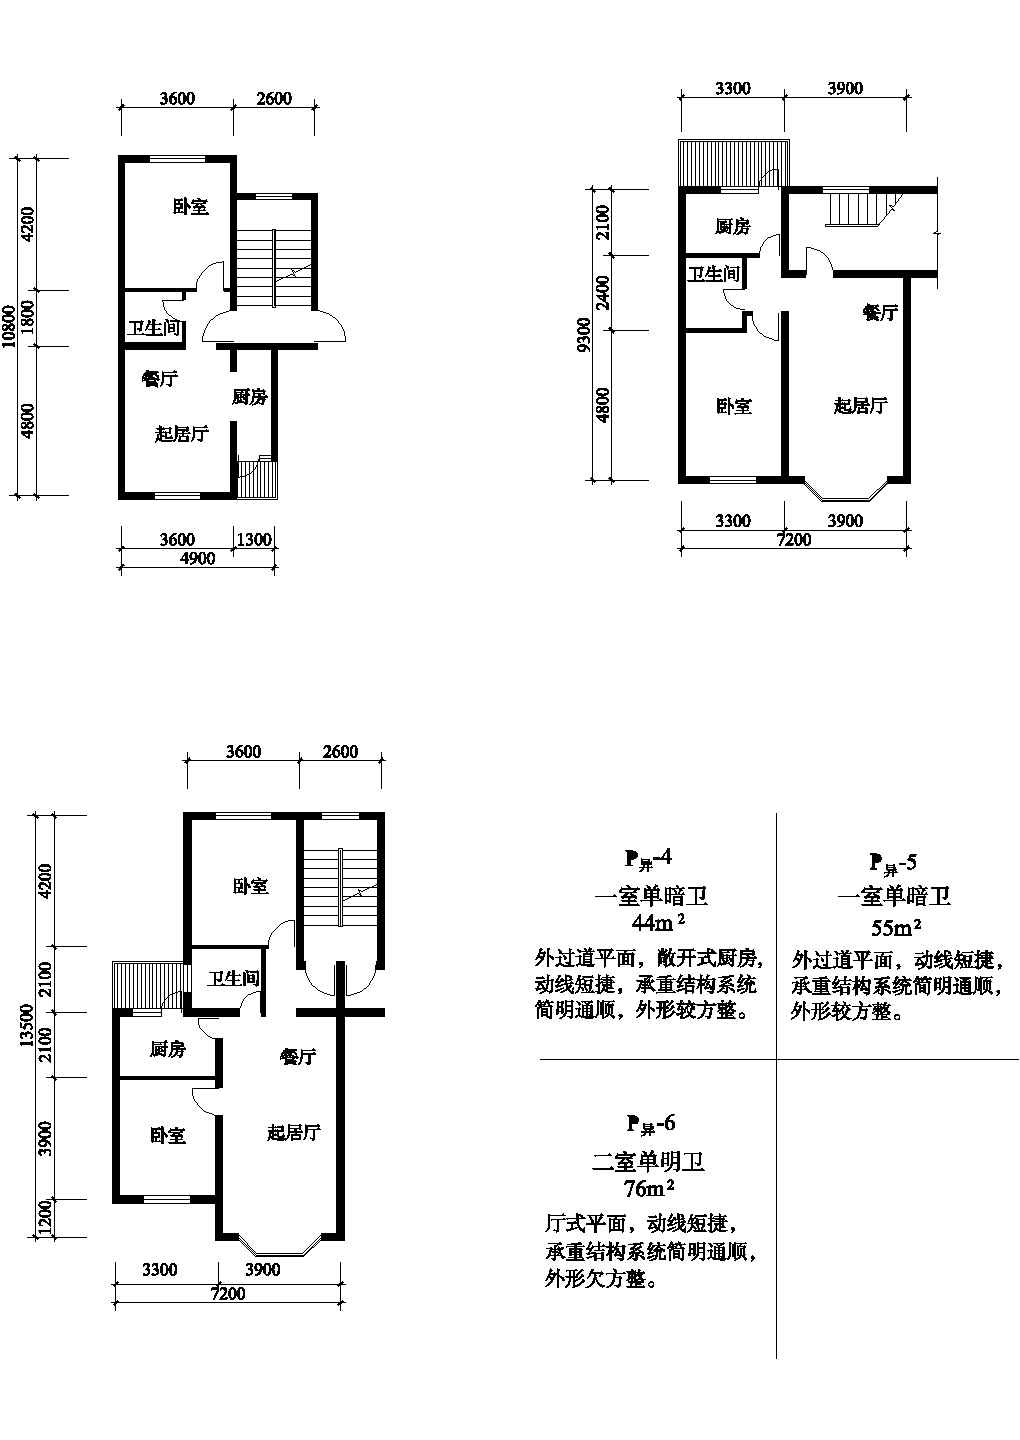 一室40-70平左右单元式住宅平面图纸